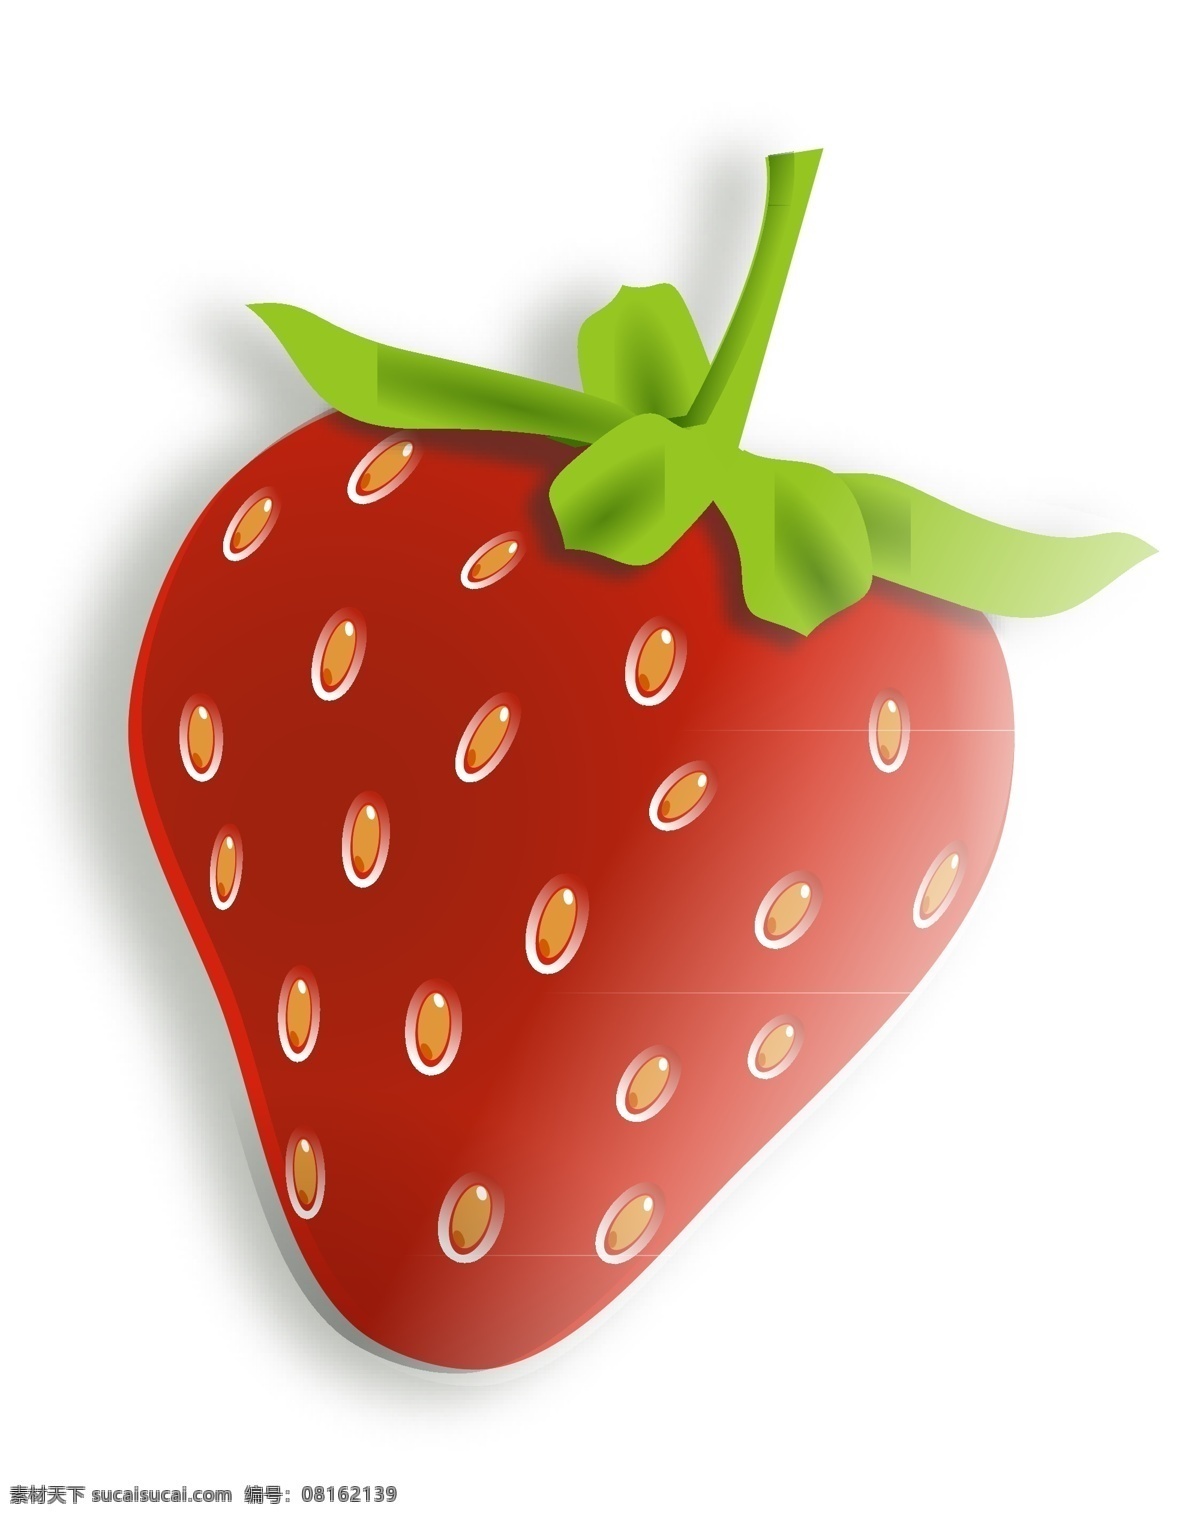 草莓 季 写实 卡通 矢量 写实草莓 伪立体草莓 渐变草莓 黄籽 晶莹剔透 整个草莓 深红色草莓 草莓季 可爱草莓